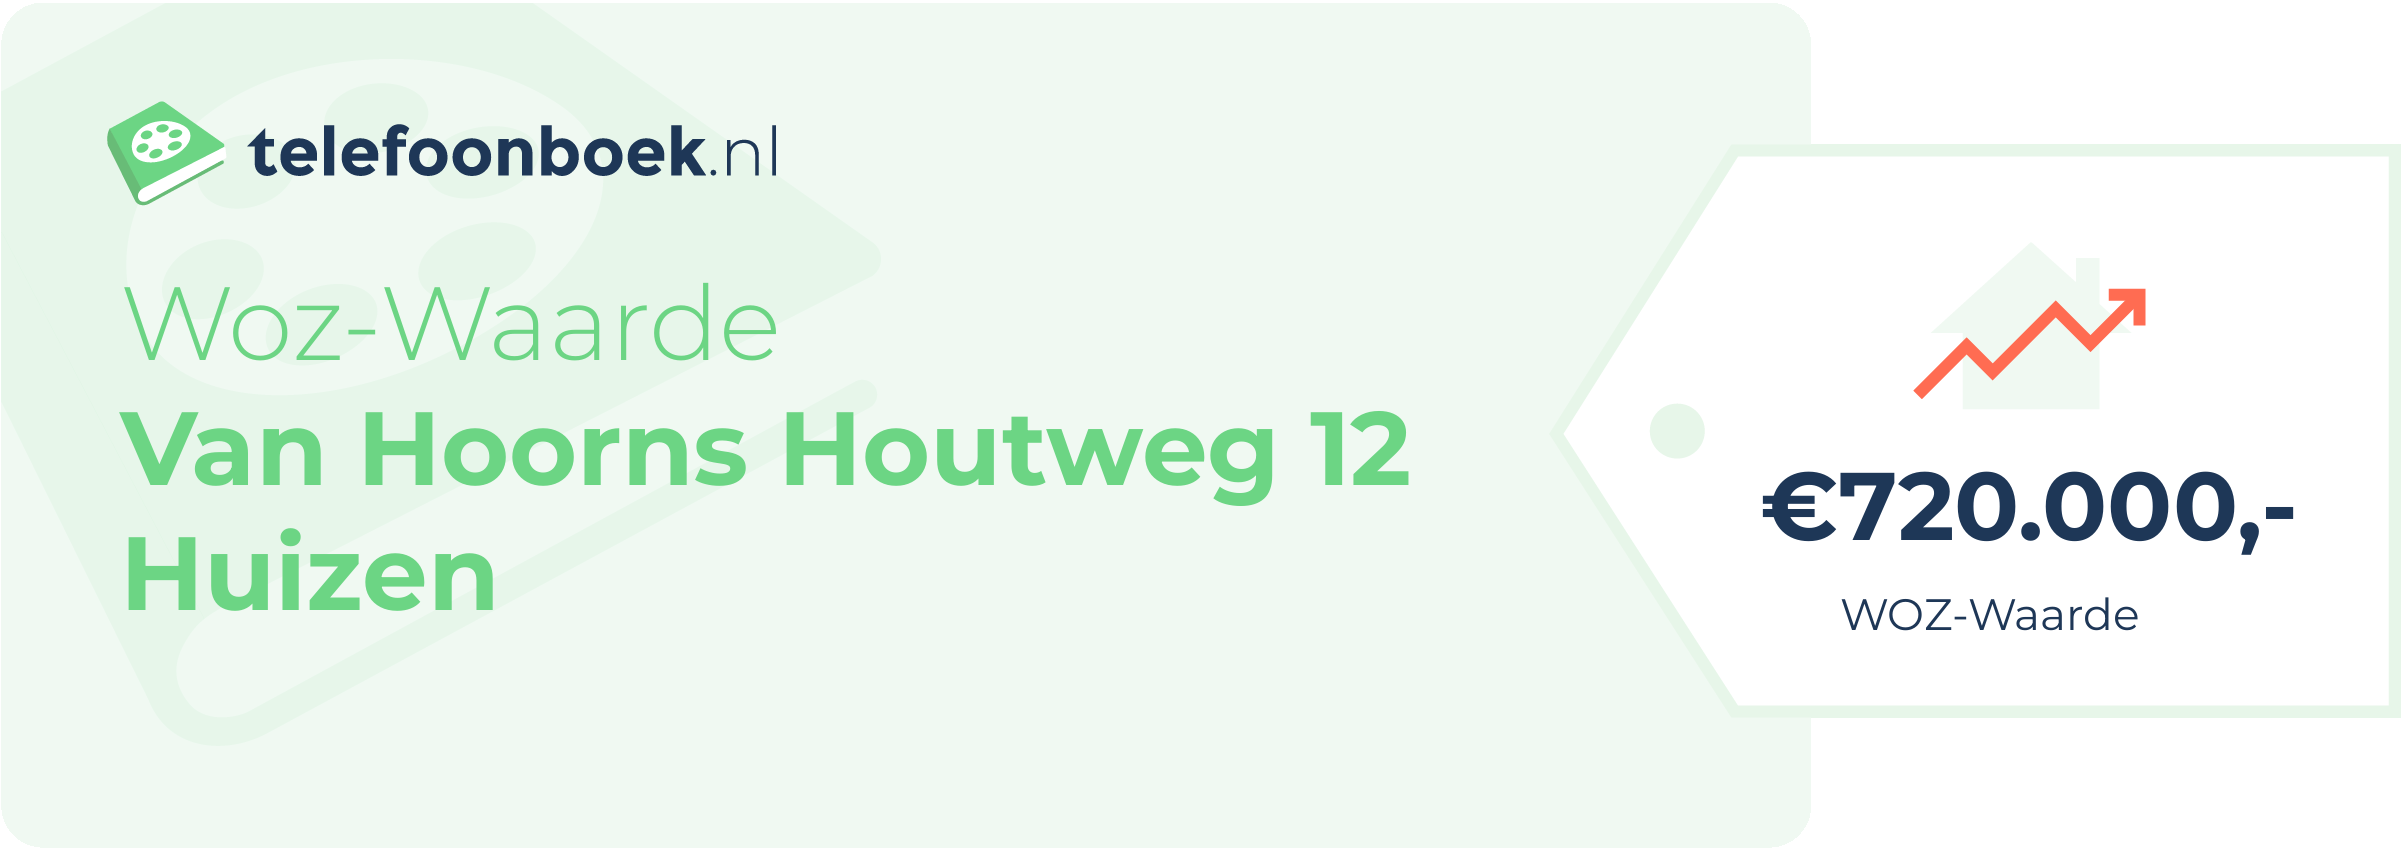 WOZ-waarde Van Hoorns Houtweg 12 Huizen